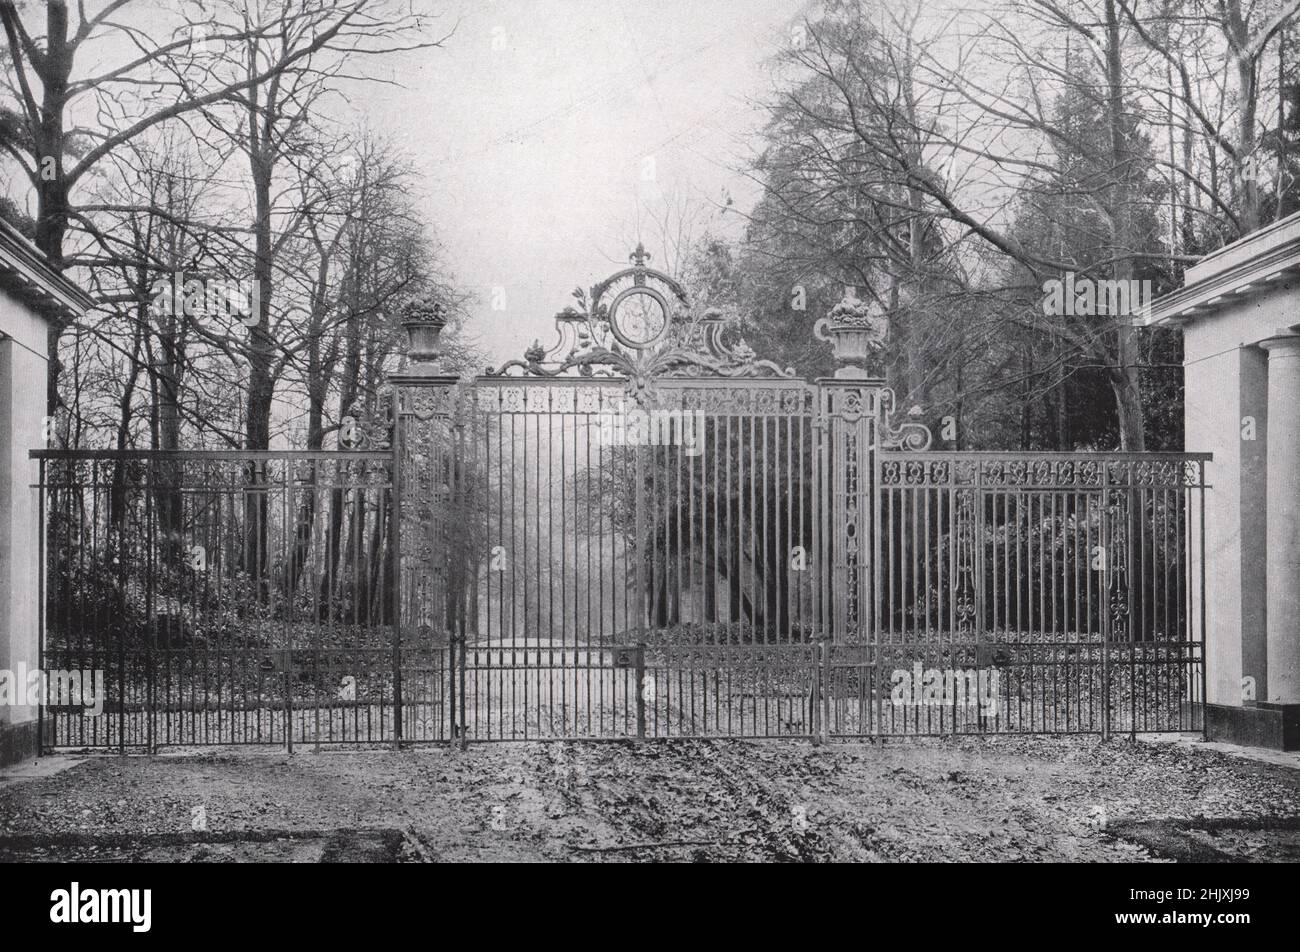 Porte d'ingresso a una tenuta di campagna. Inghilterra. Niven & Wigglesworth, Architetti (1908) Foto Stock